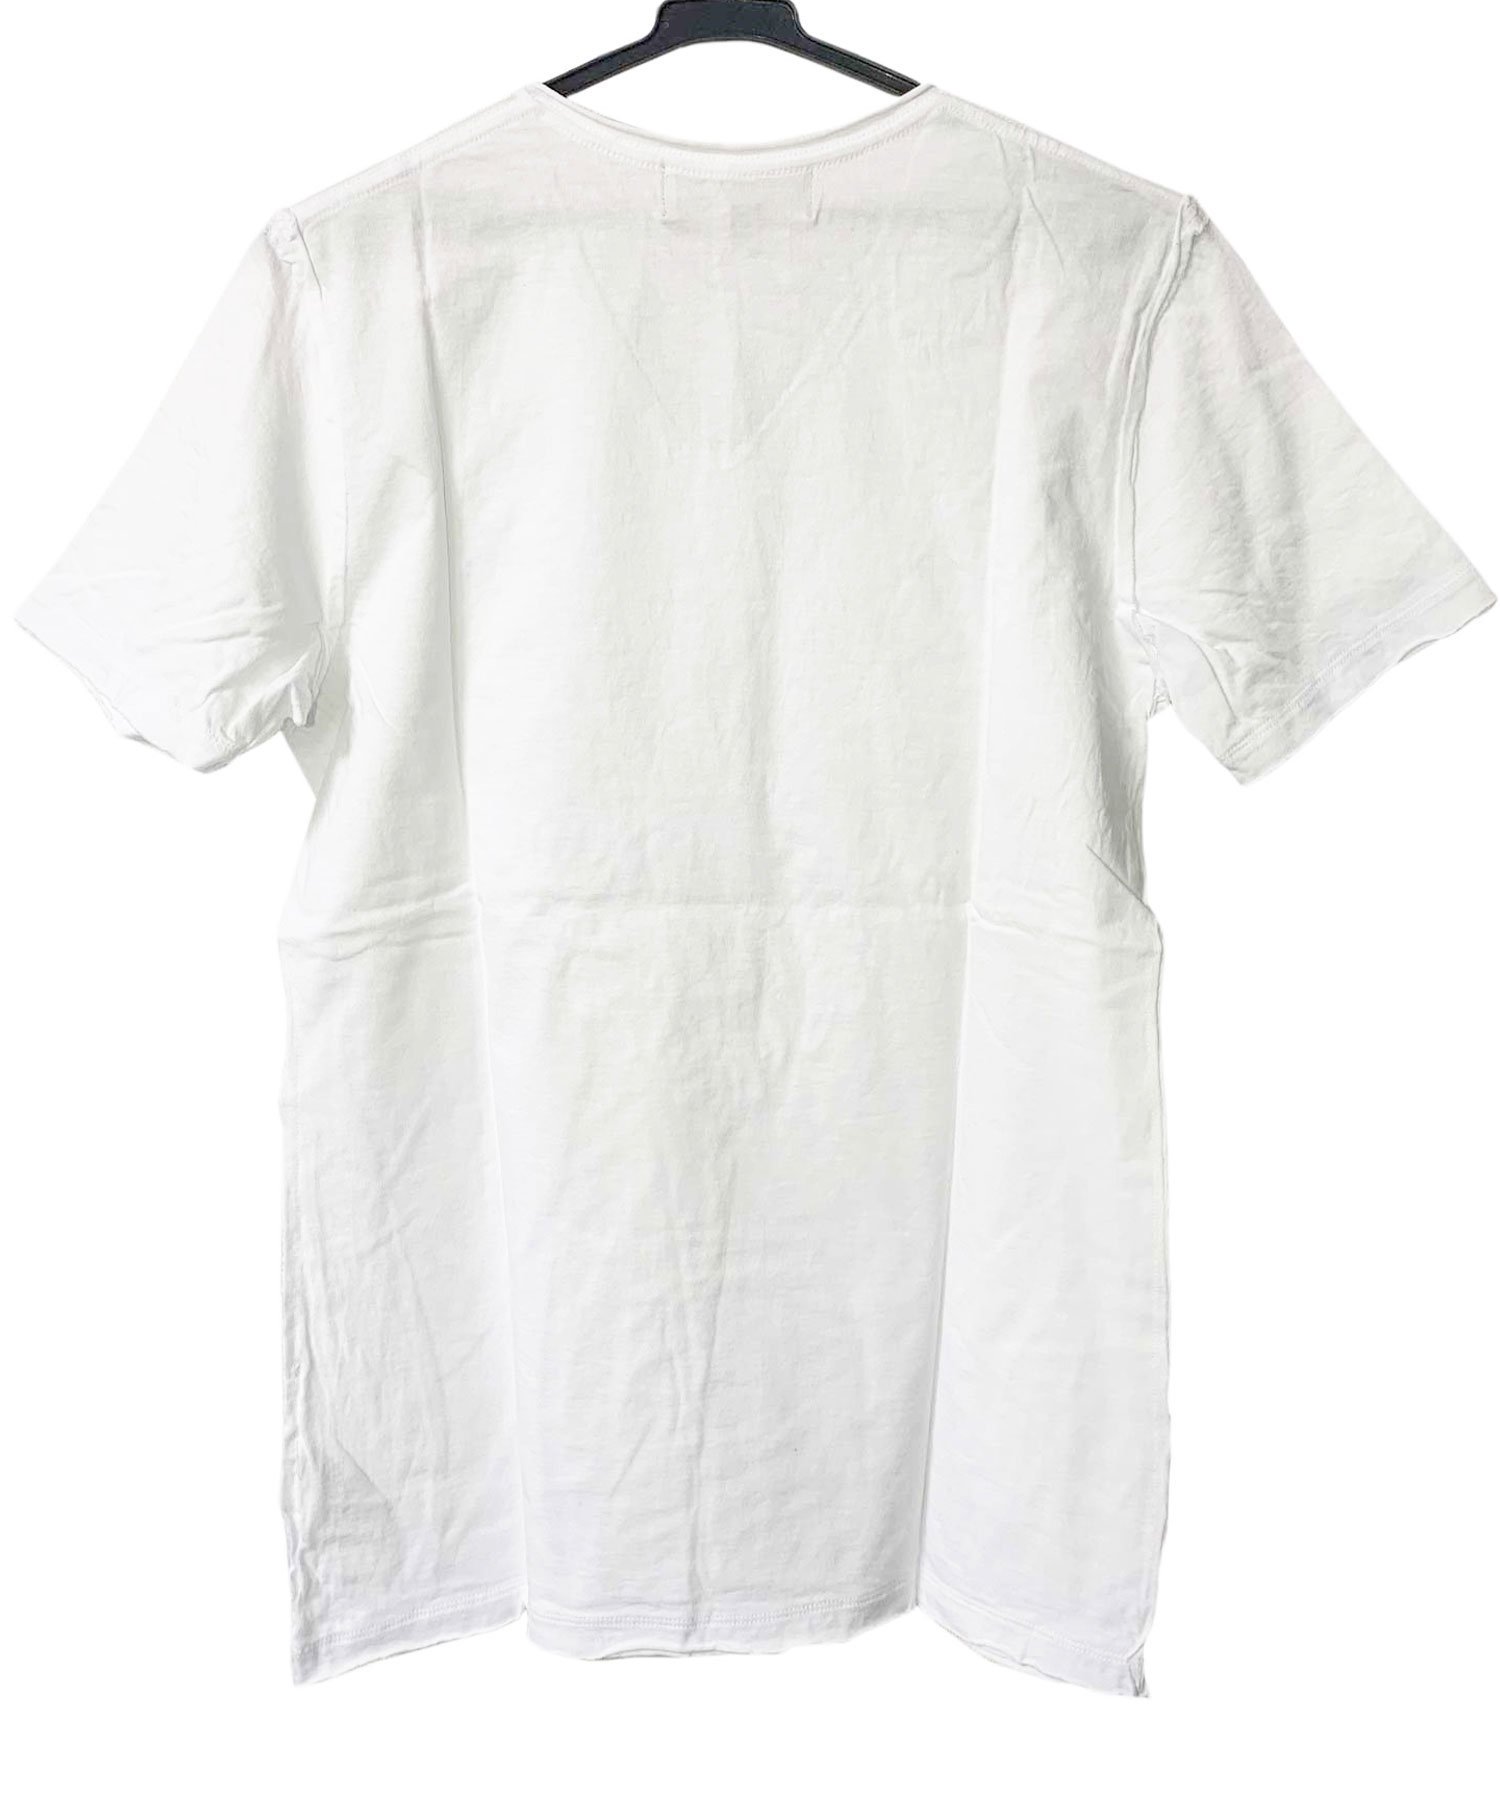 Bennu（ベンヌ）刺繍カットオフVネックTシャツ / ホワイト